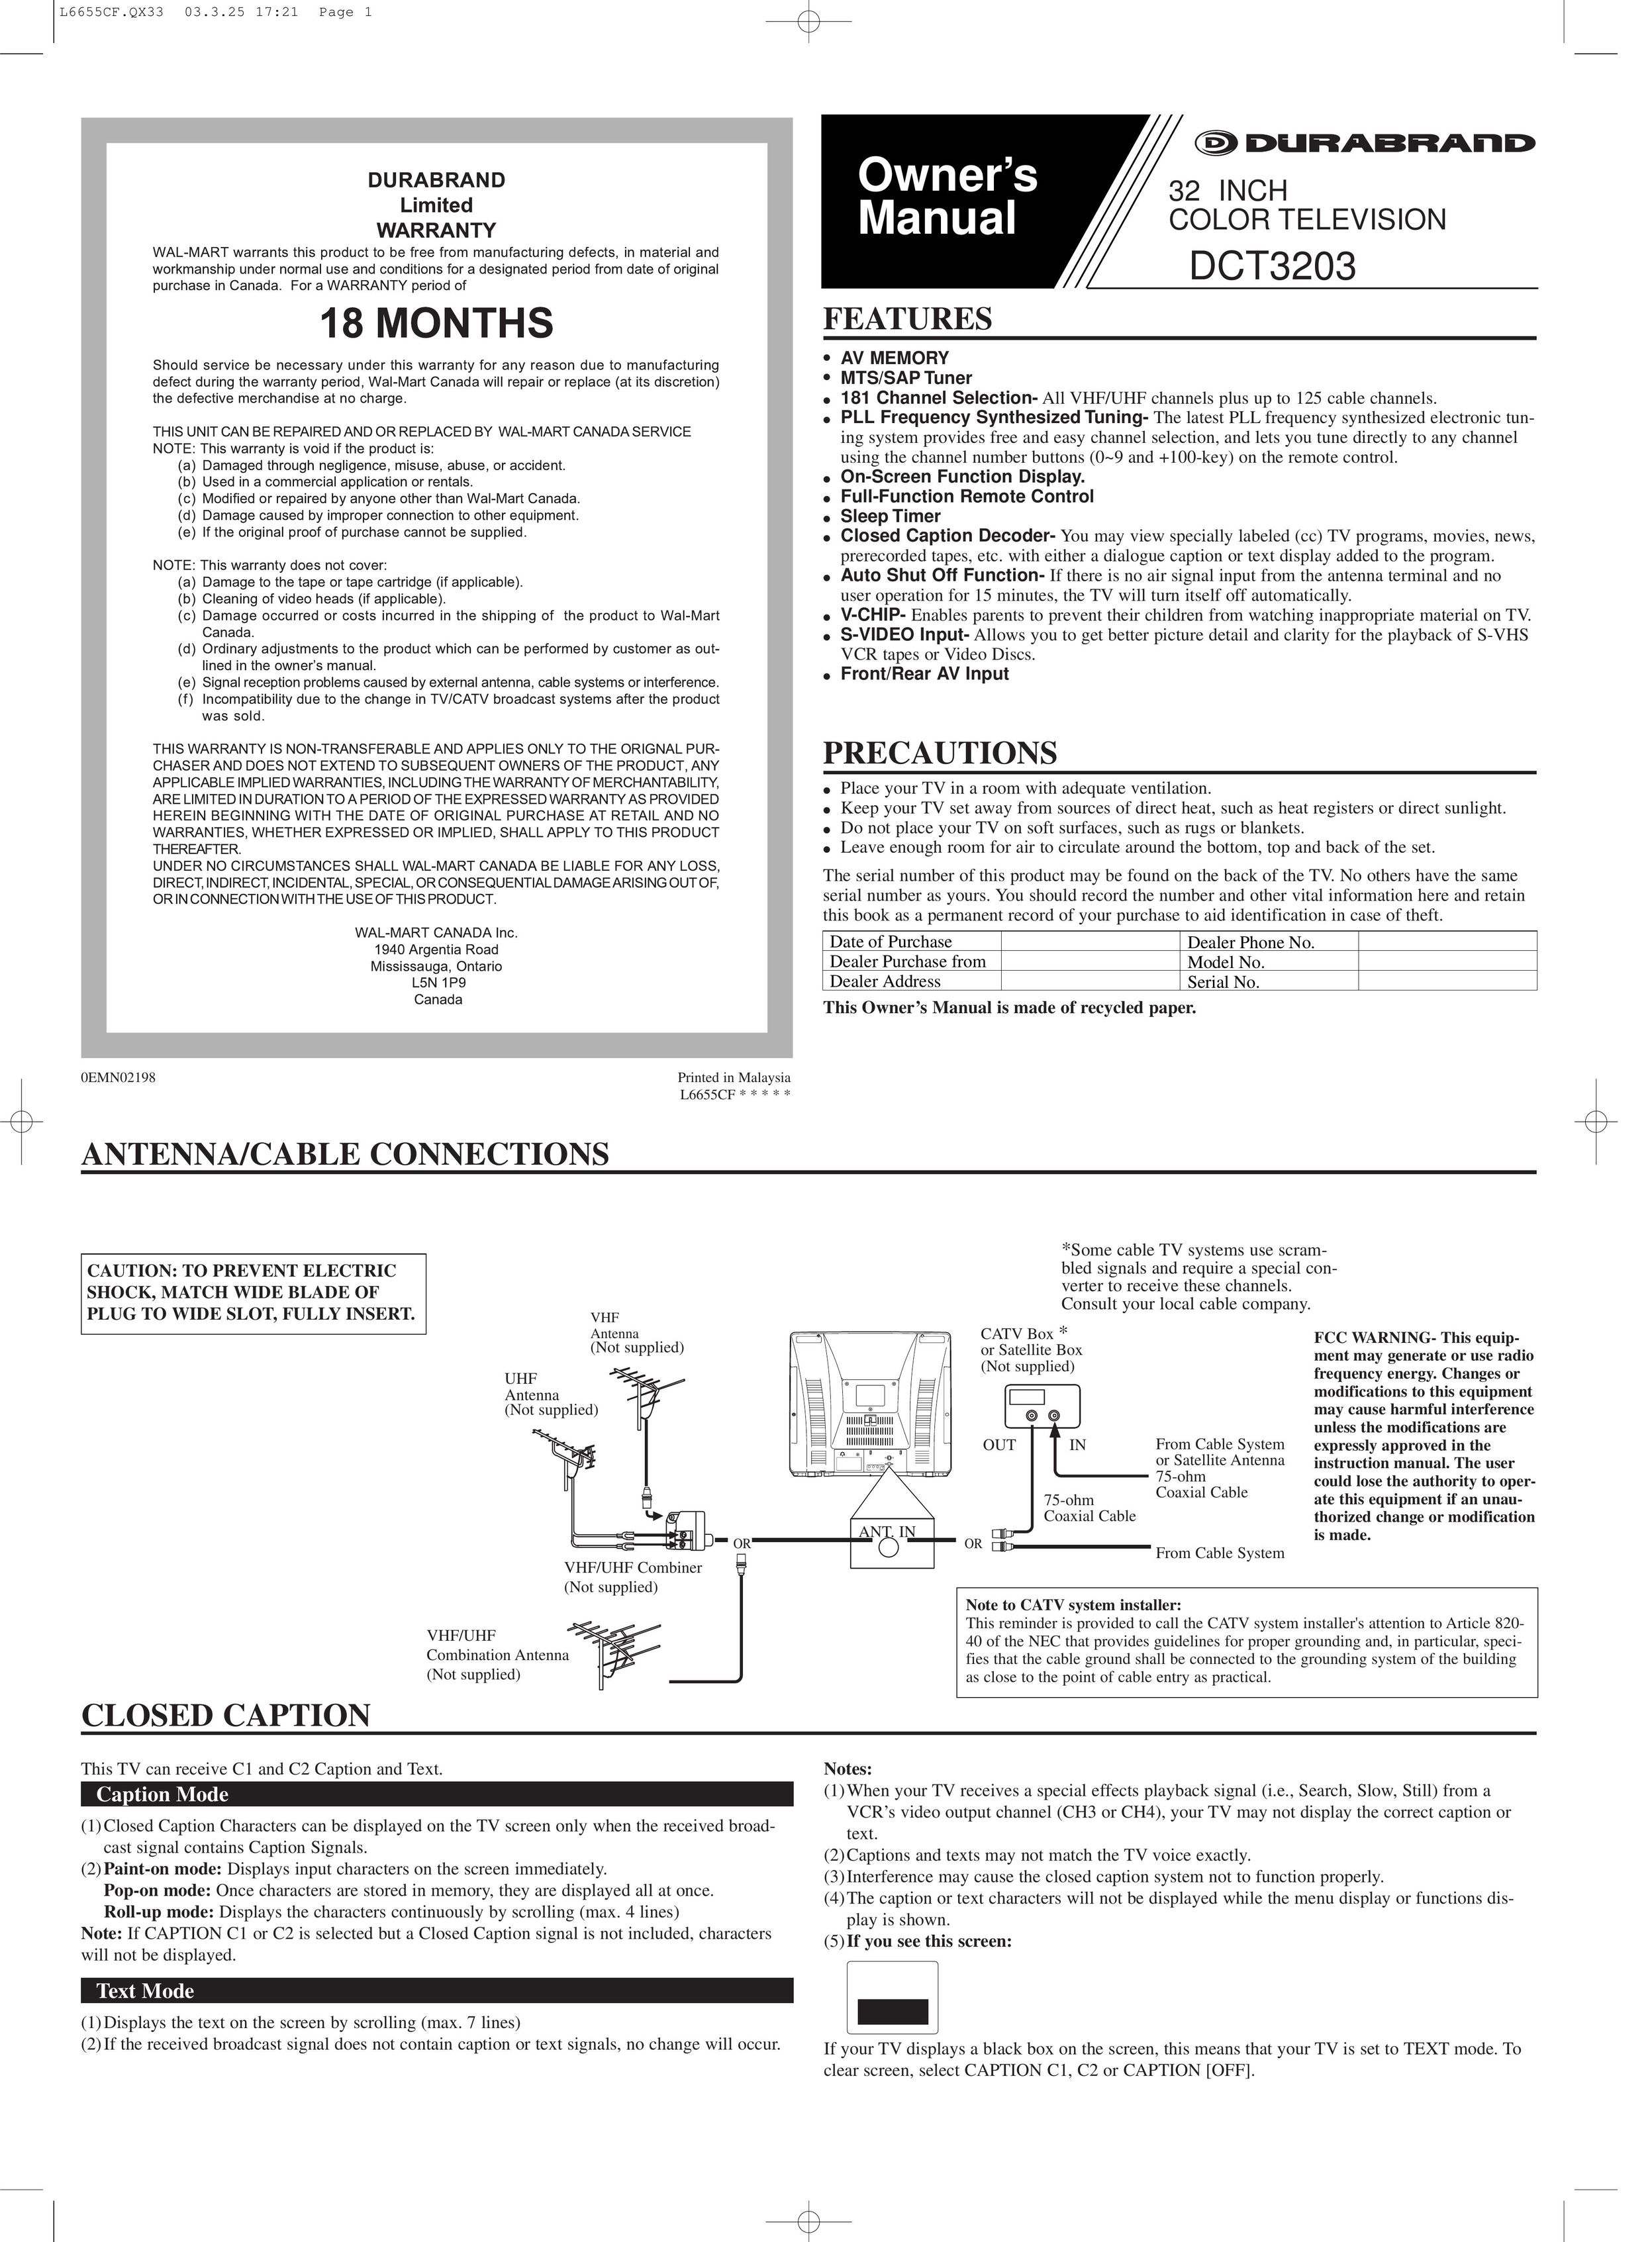 FUNAI DCT3203 CRT Television User Manual